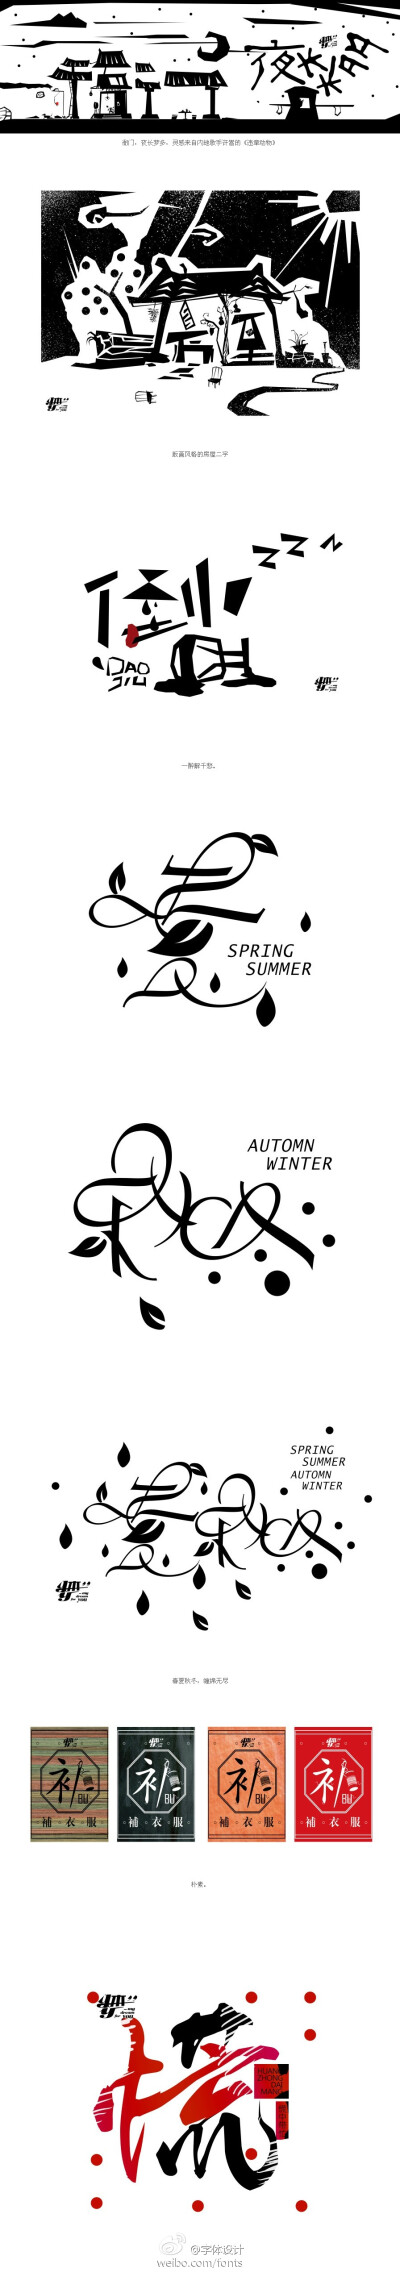 分享来自冉儿雨 的字体设计作品。